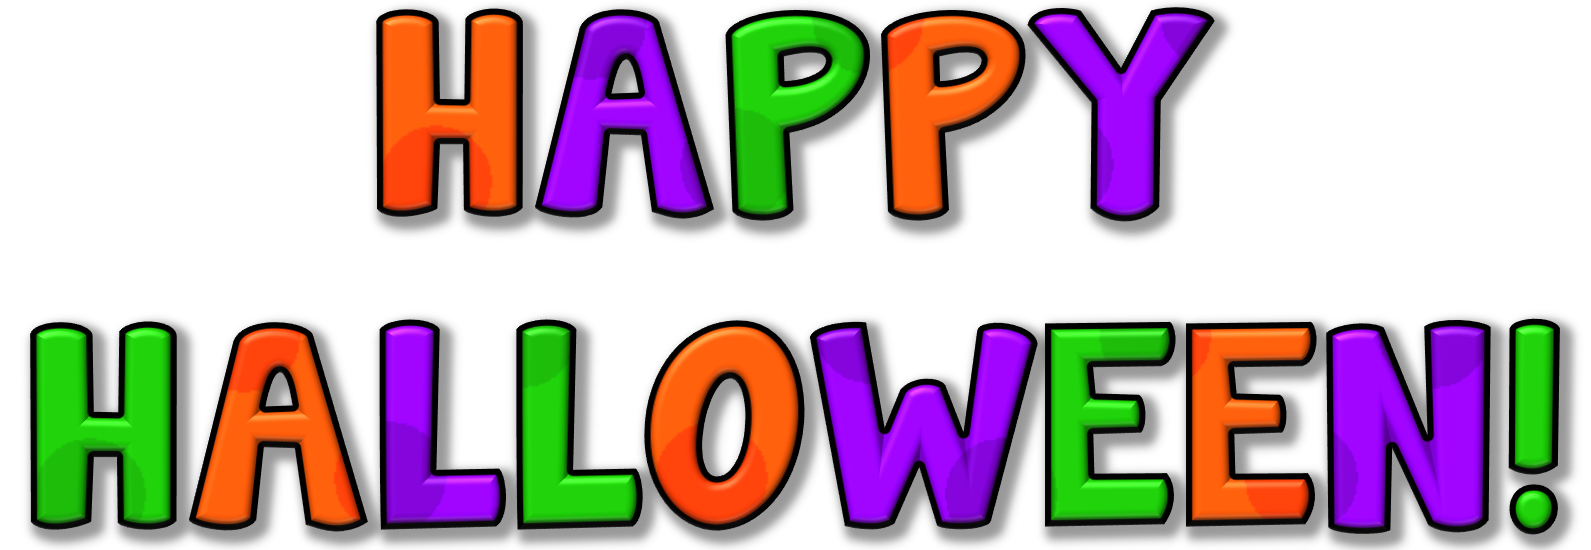 Halloween Clip Art Free Downloads Happy Halloween Clip Art Clipart